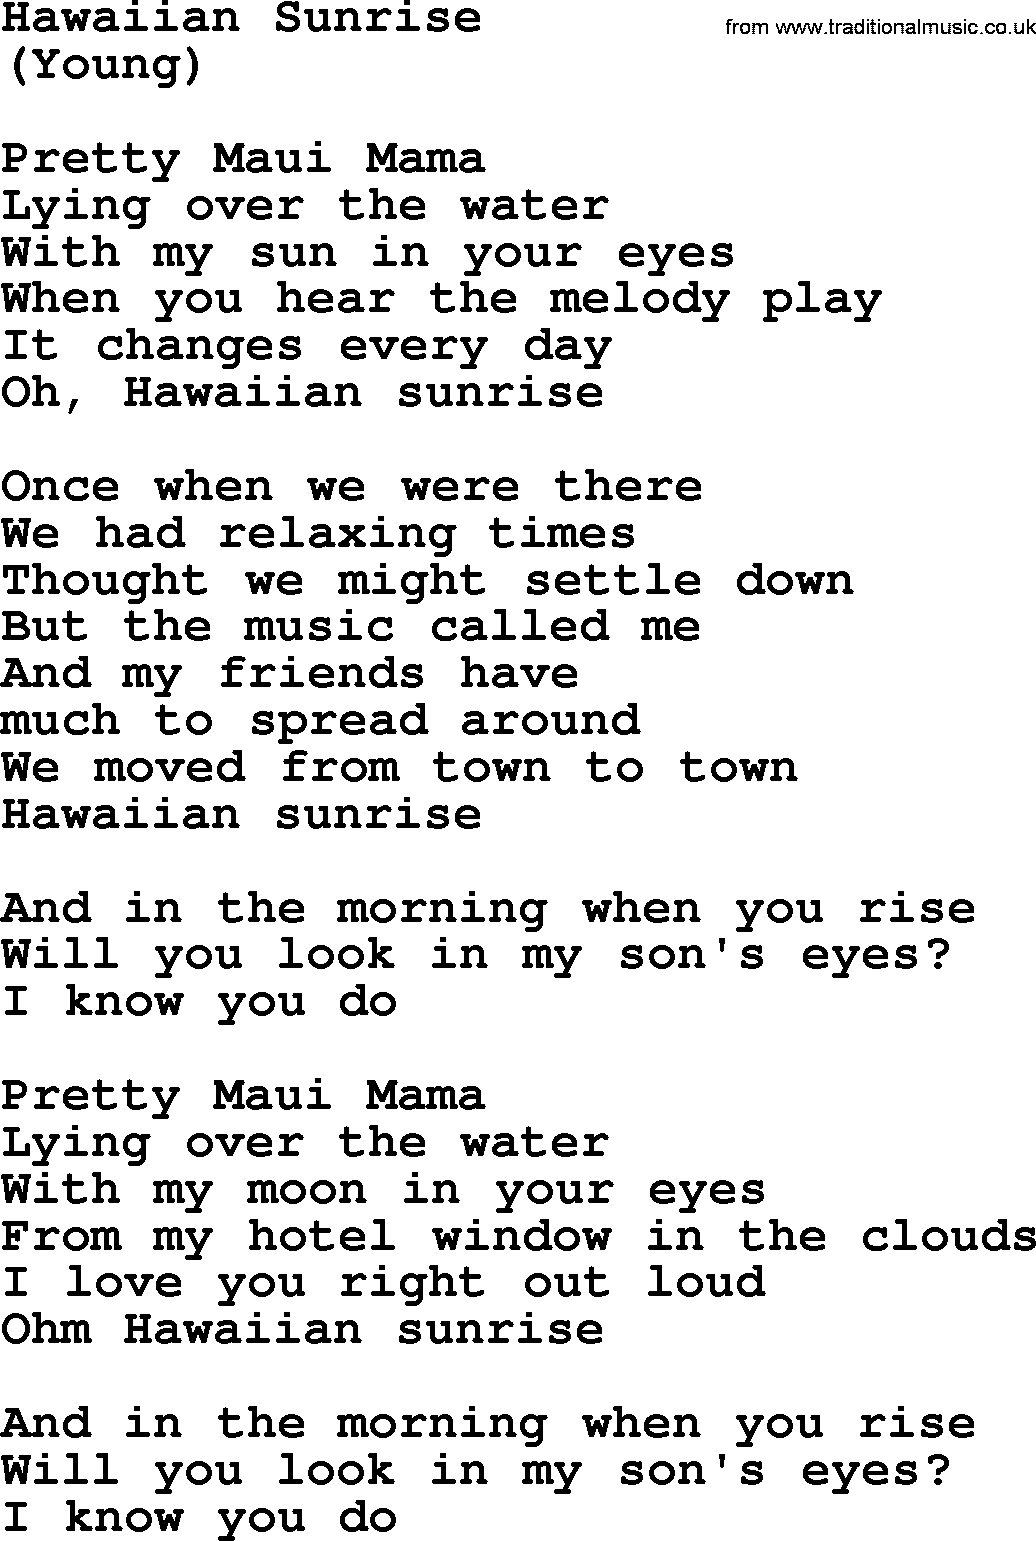 The Byrds song Hawaiian Sunrise, lyrics